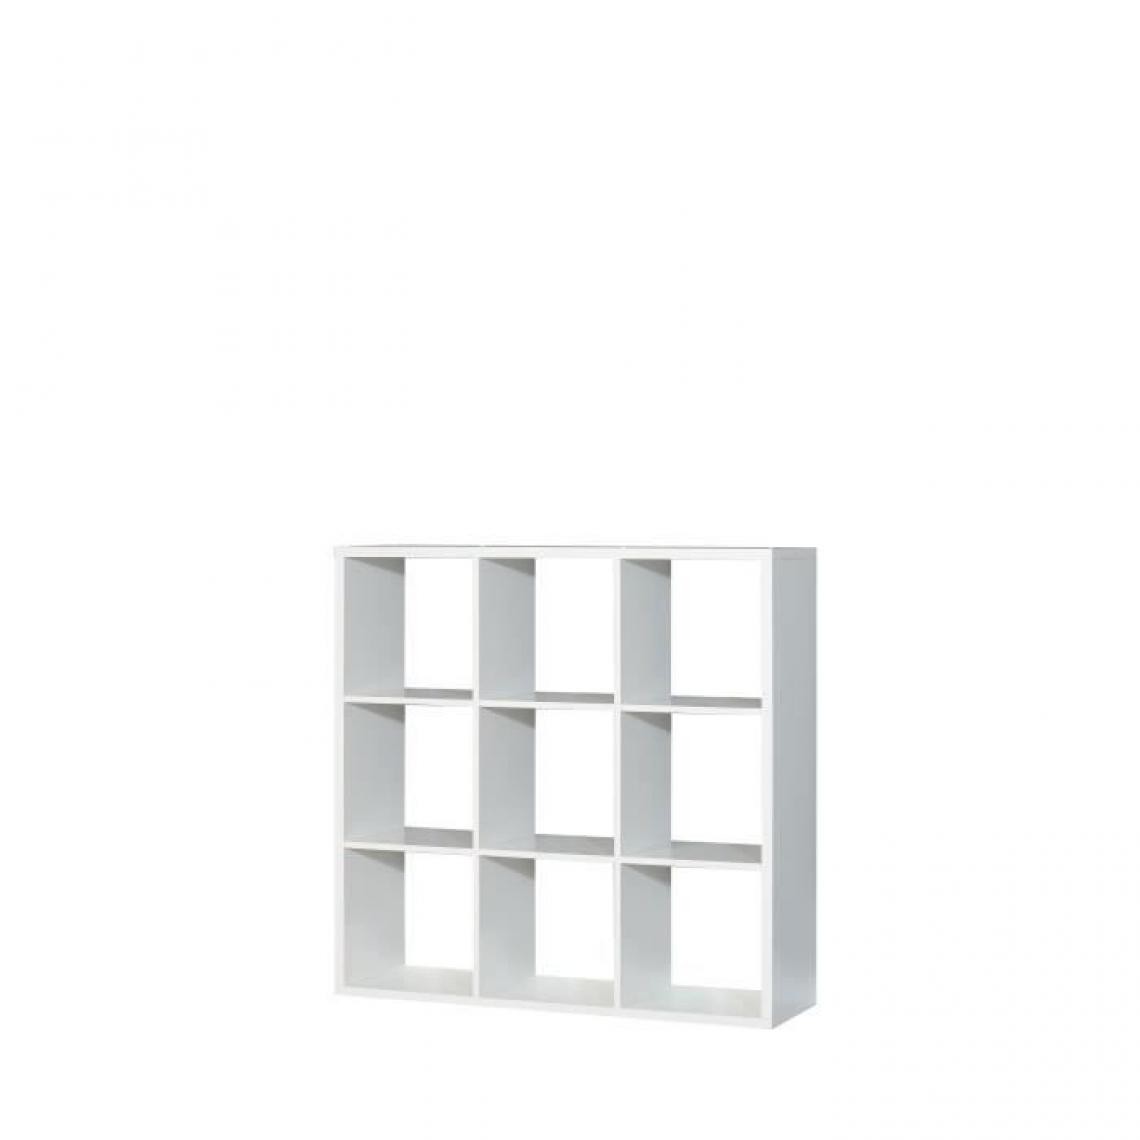 Cstore - Etagère 9 niches - Décor papier blanc mat - MAURO - Etagères